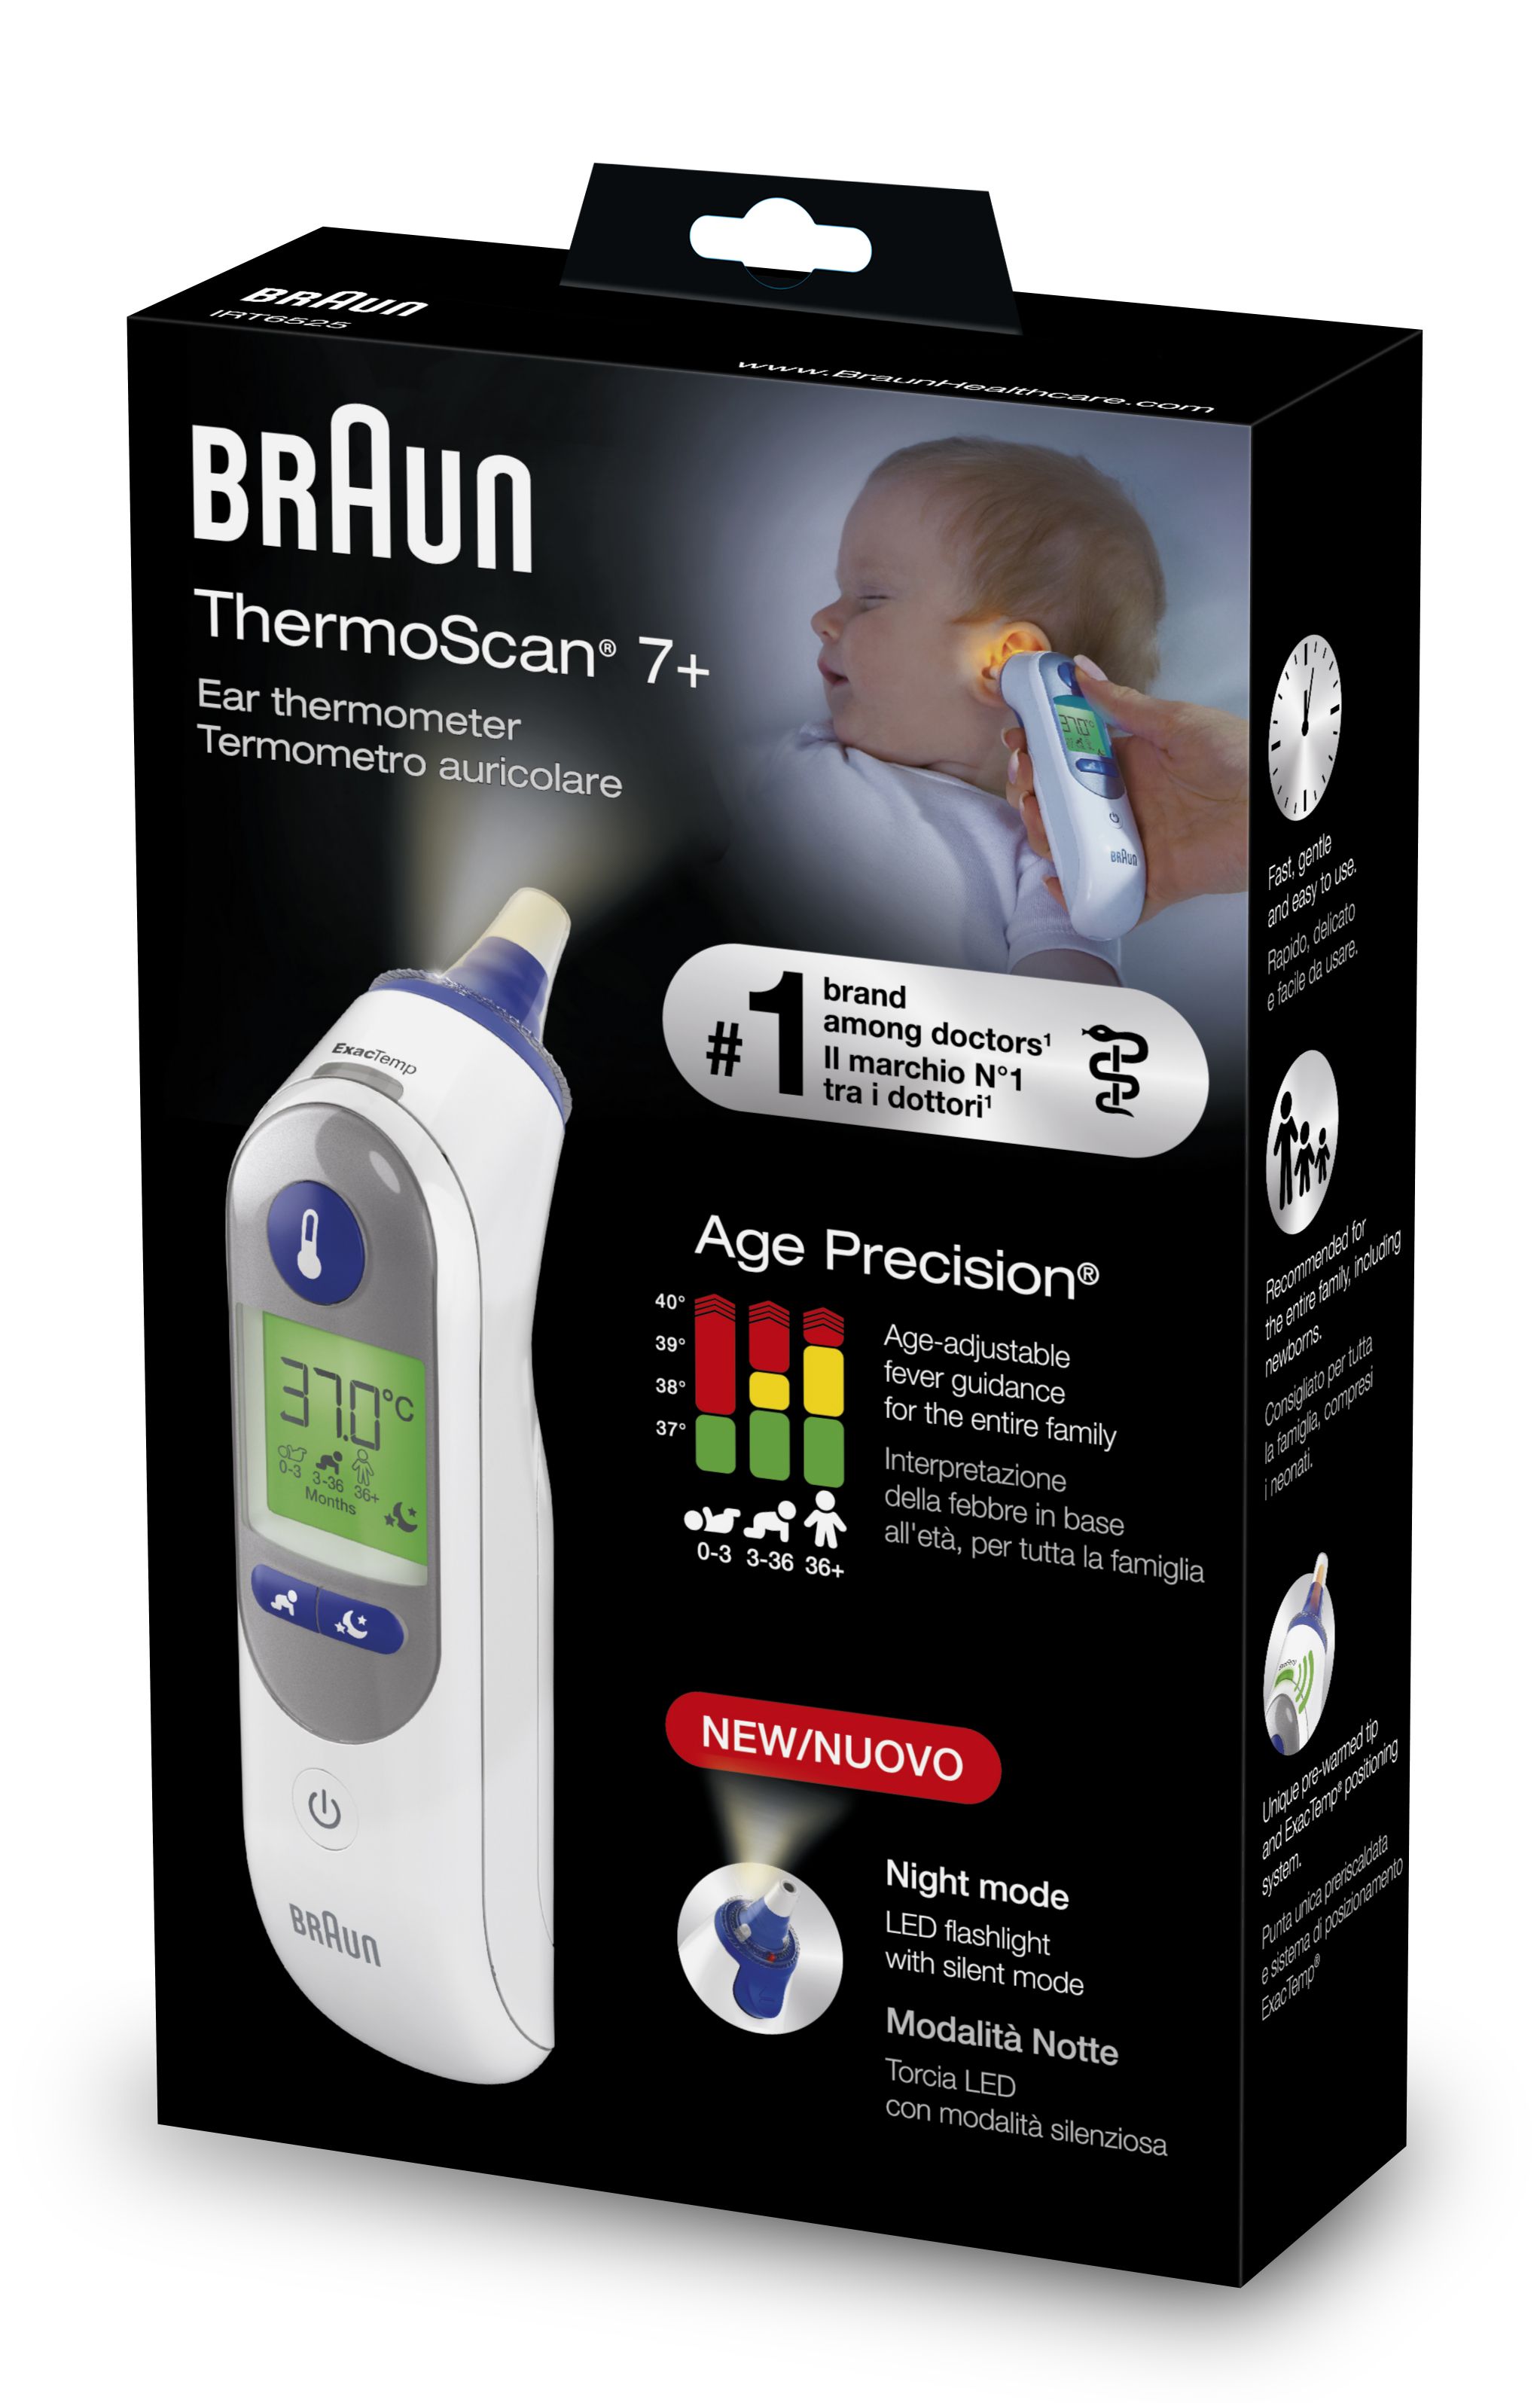 Termometro Braun ThermoScan 7+ con Age Precision® e modalità Notte